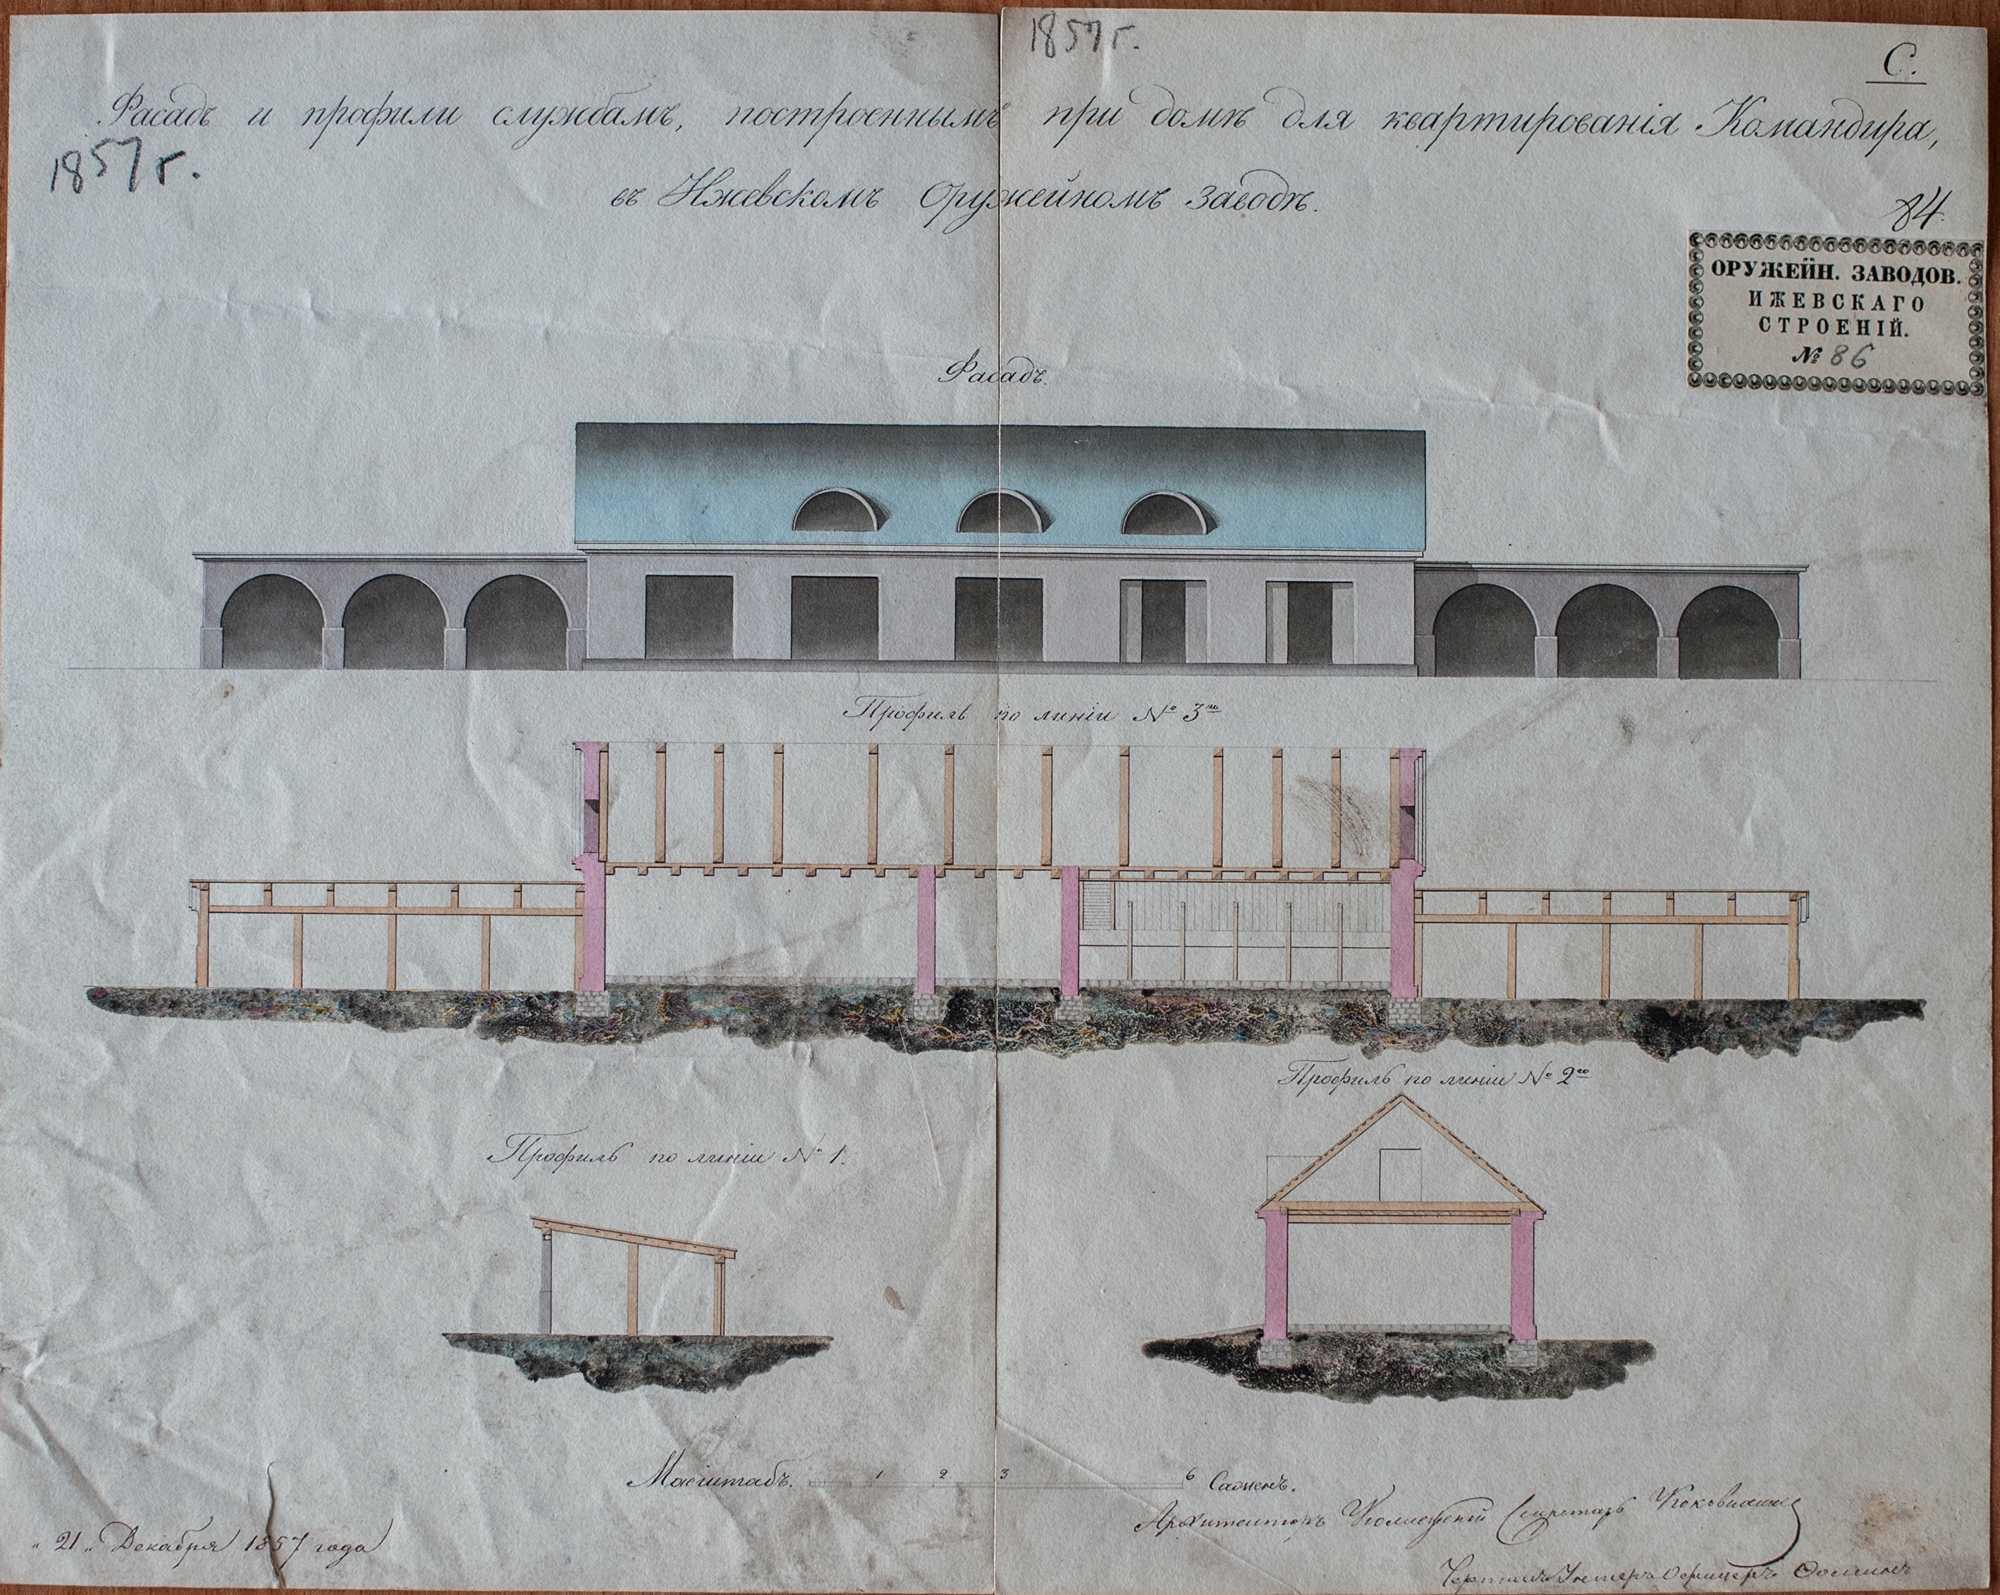 Фасад и профили служб, построенным при доме для квартирования командира. 1857